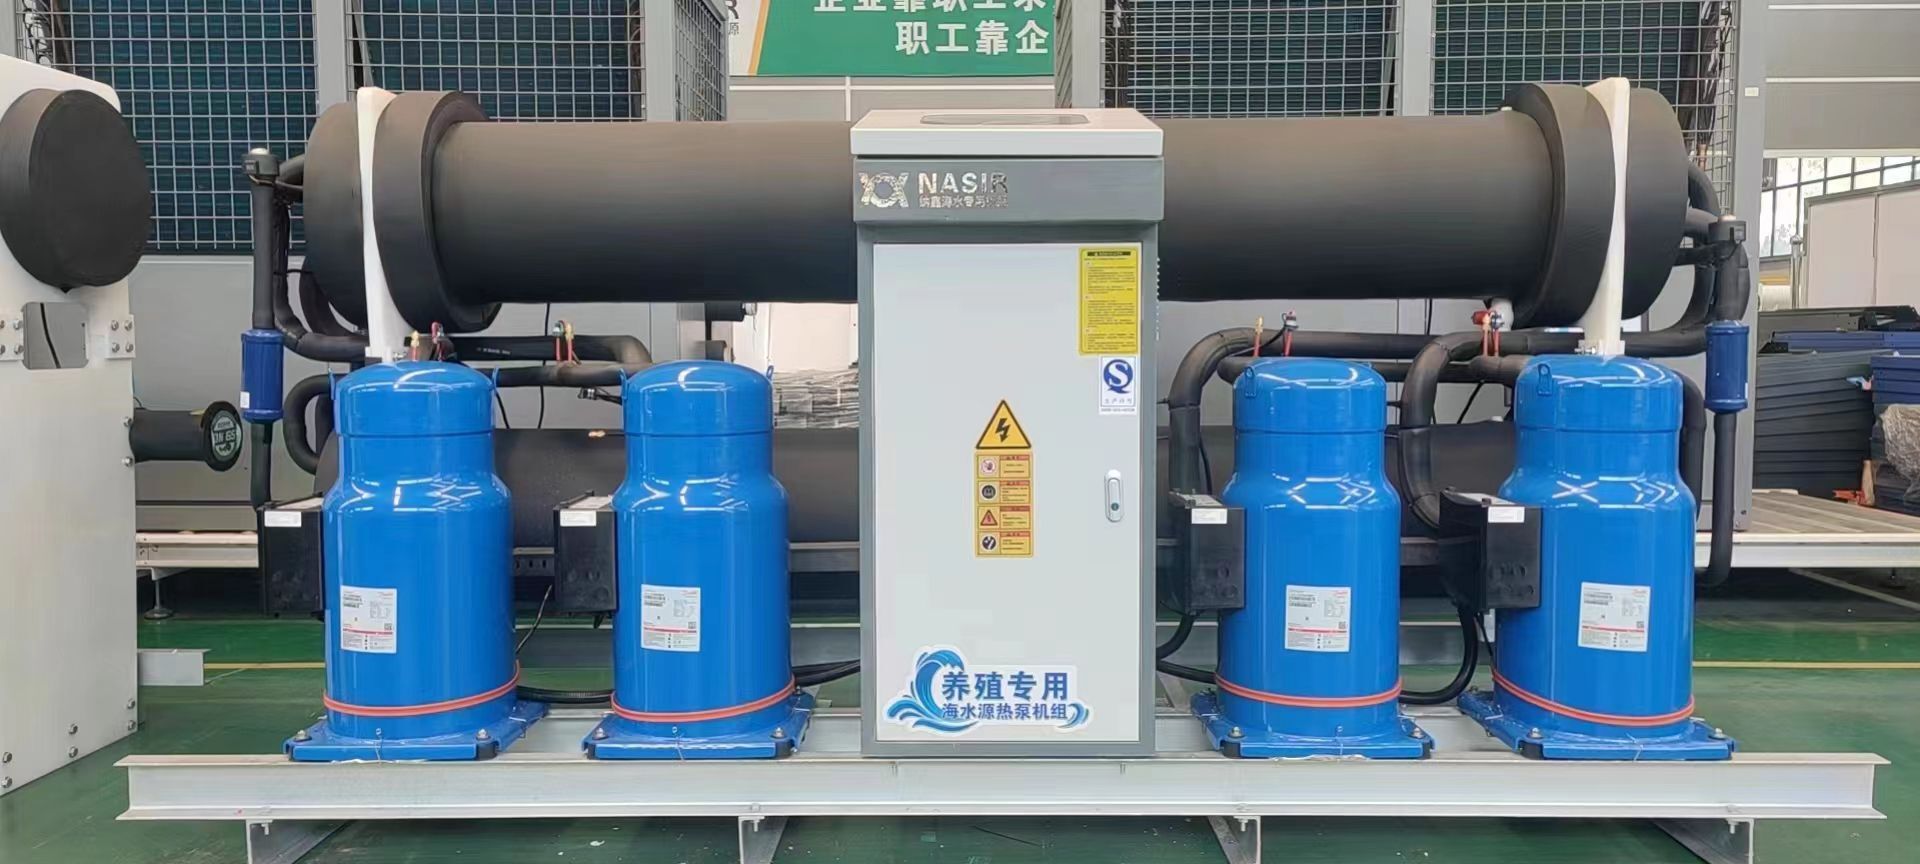 養殖專用海水源熱泵機組設備